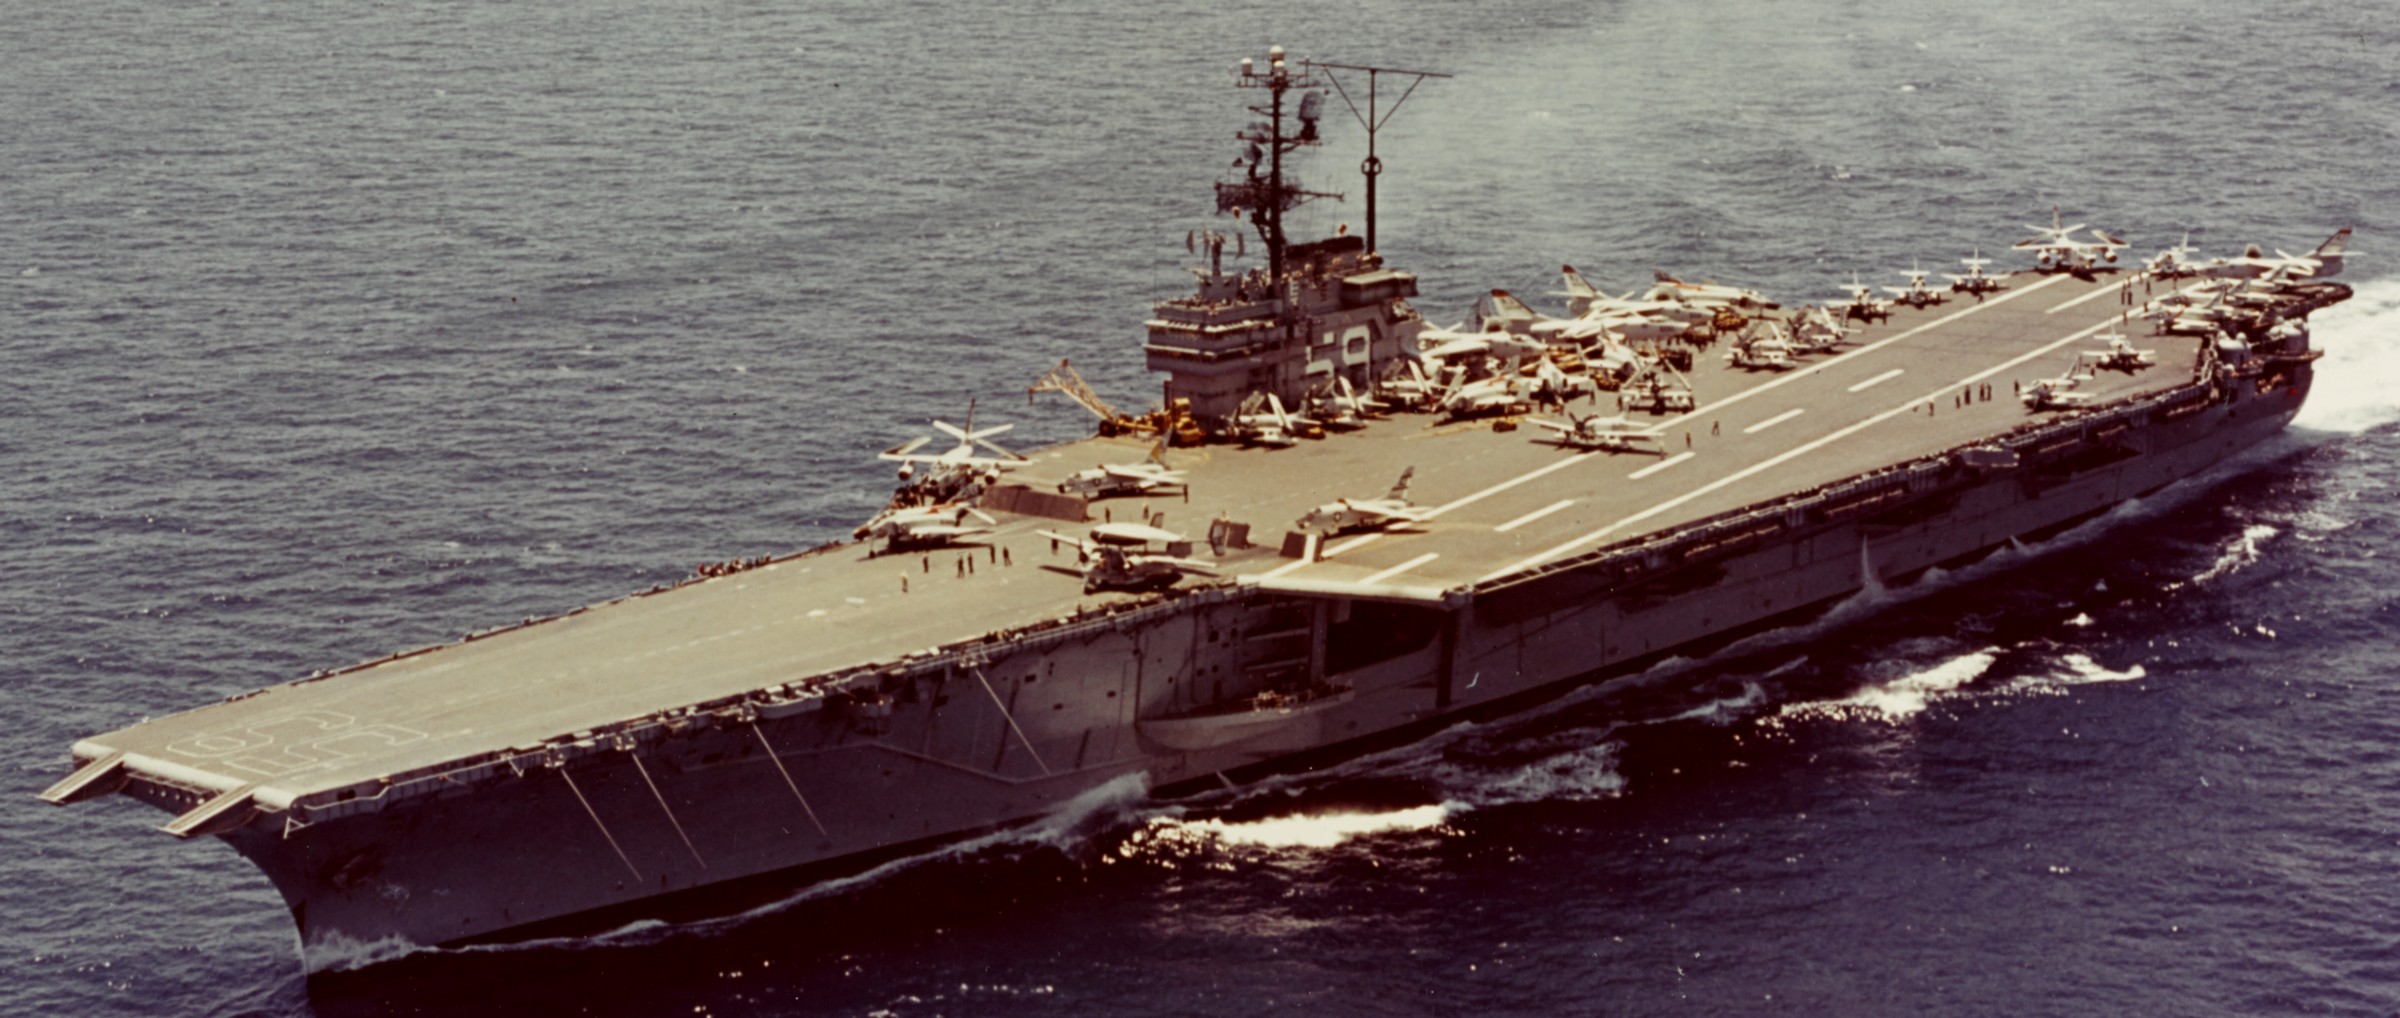 cv-59 uss forrestal aircraft carrier air group cvg-8 us navy 1962 44